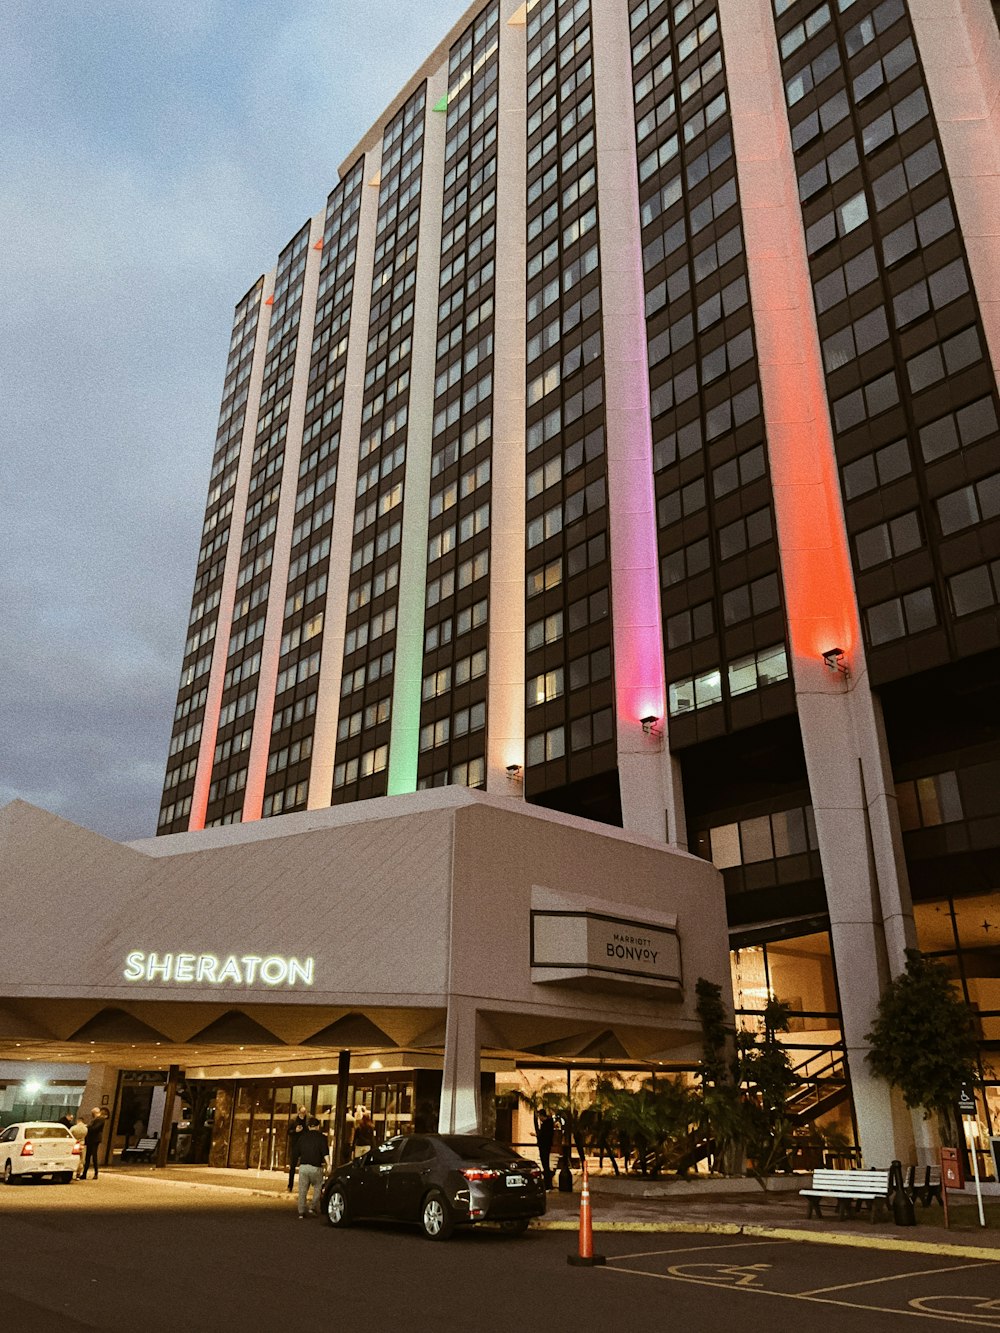 Das Sheraton Hotel ist in Regenbogenfarben erleuchtet